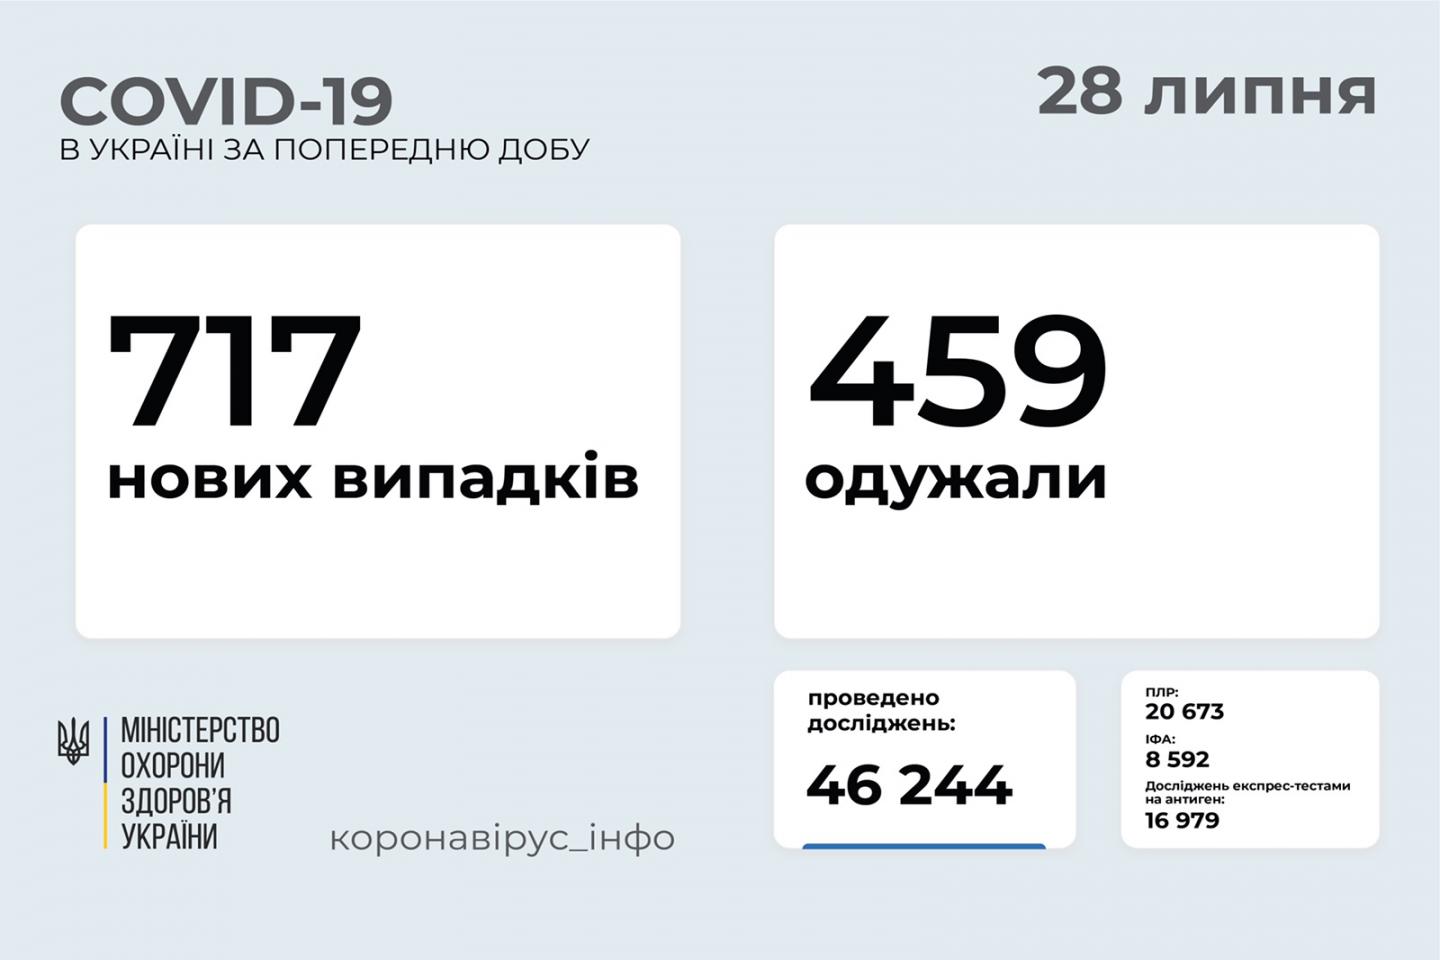 http://dunrada.gov.ua/uploadfile/archive_news/2021/07/28/2021-07-28_211/images/images-64259.jpg